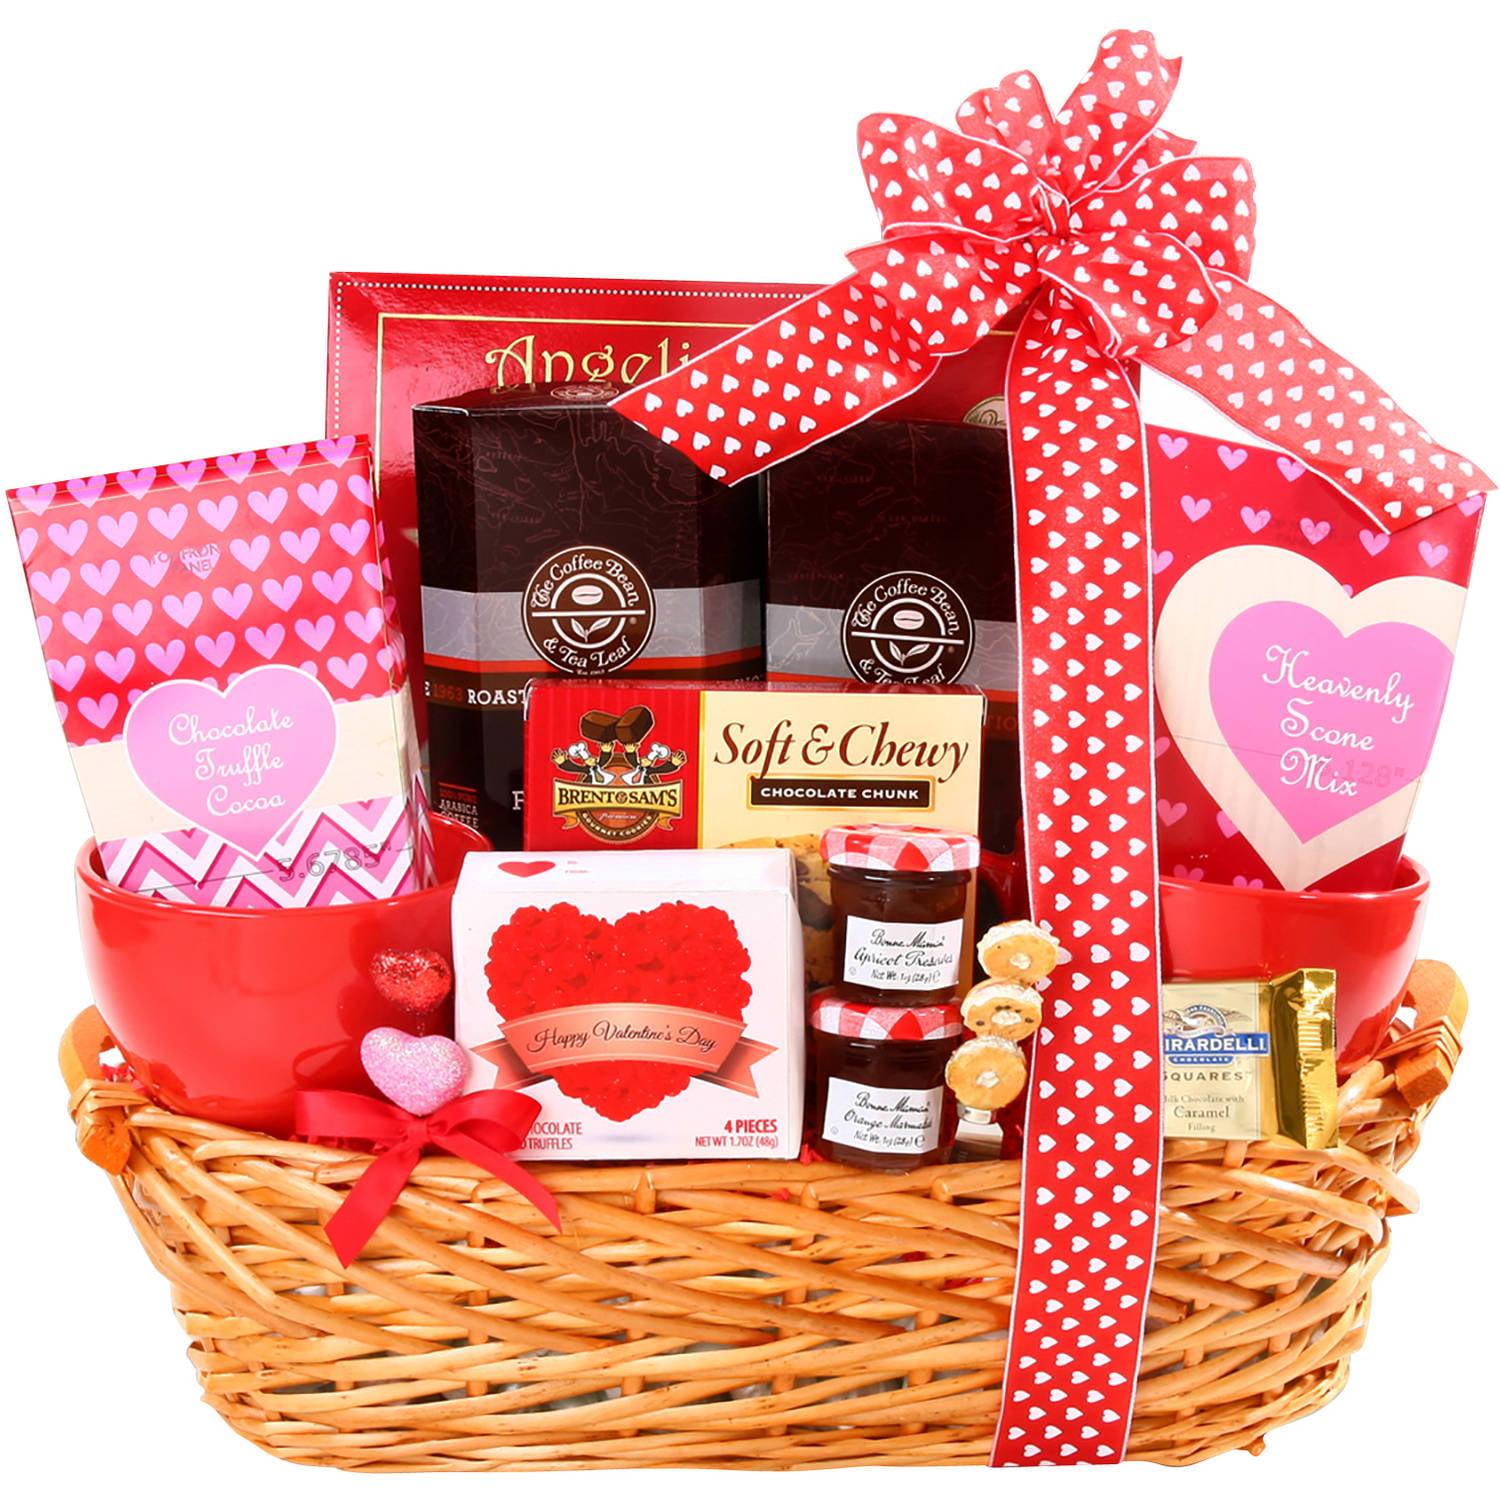 PL&C Valentine's Day Gift Baskets